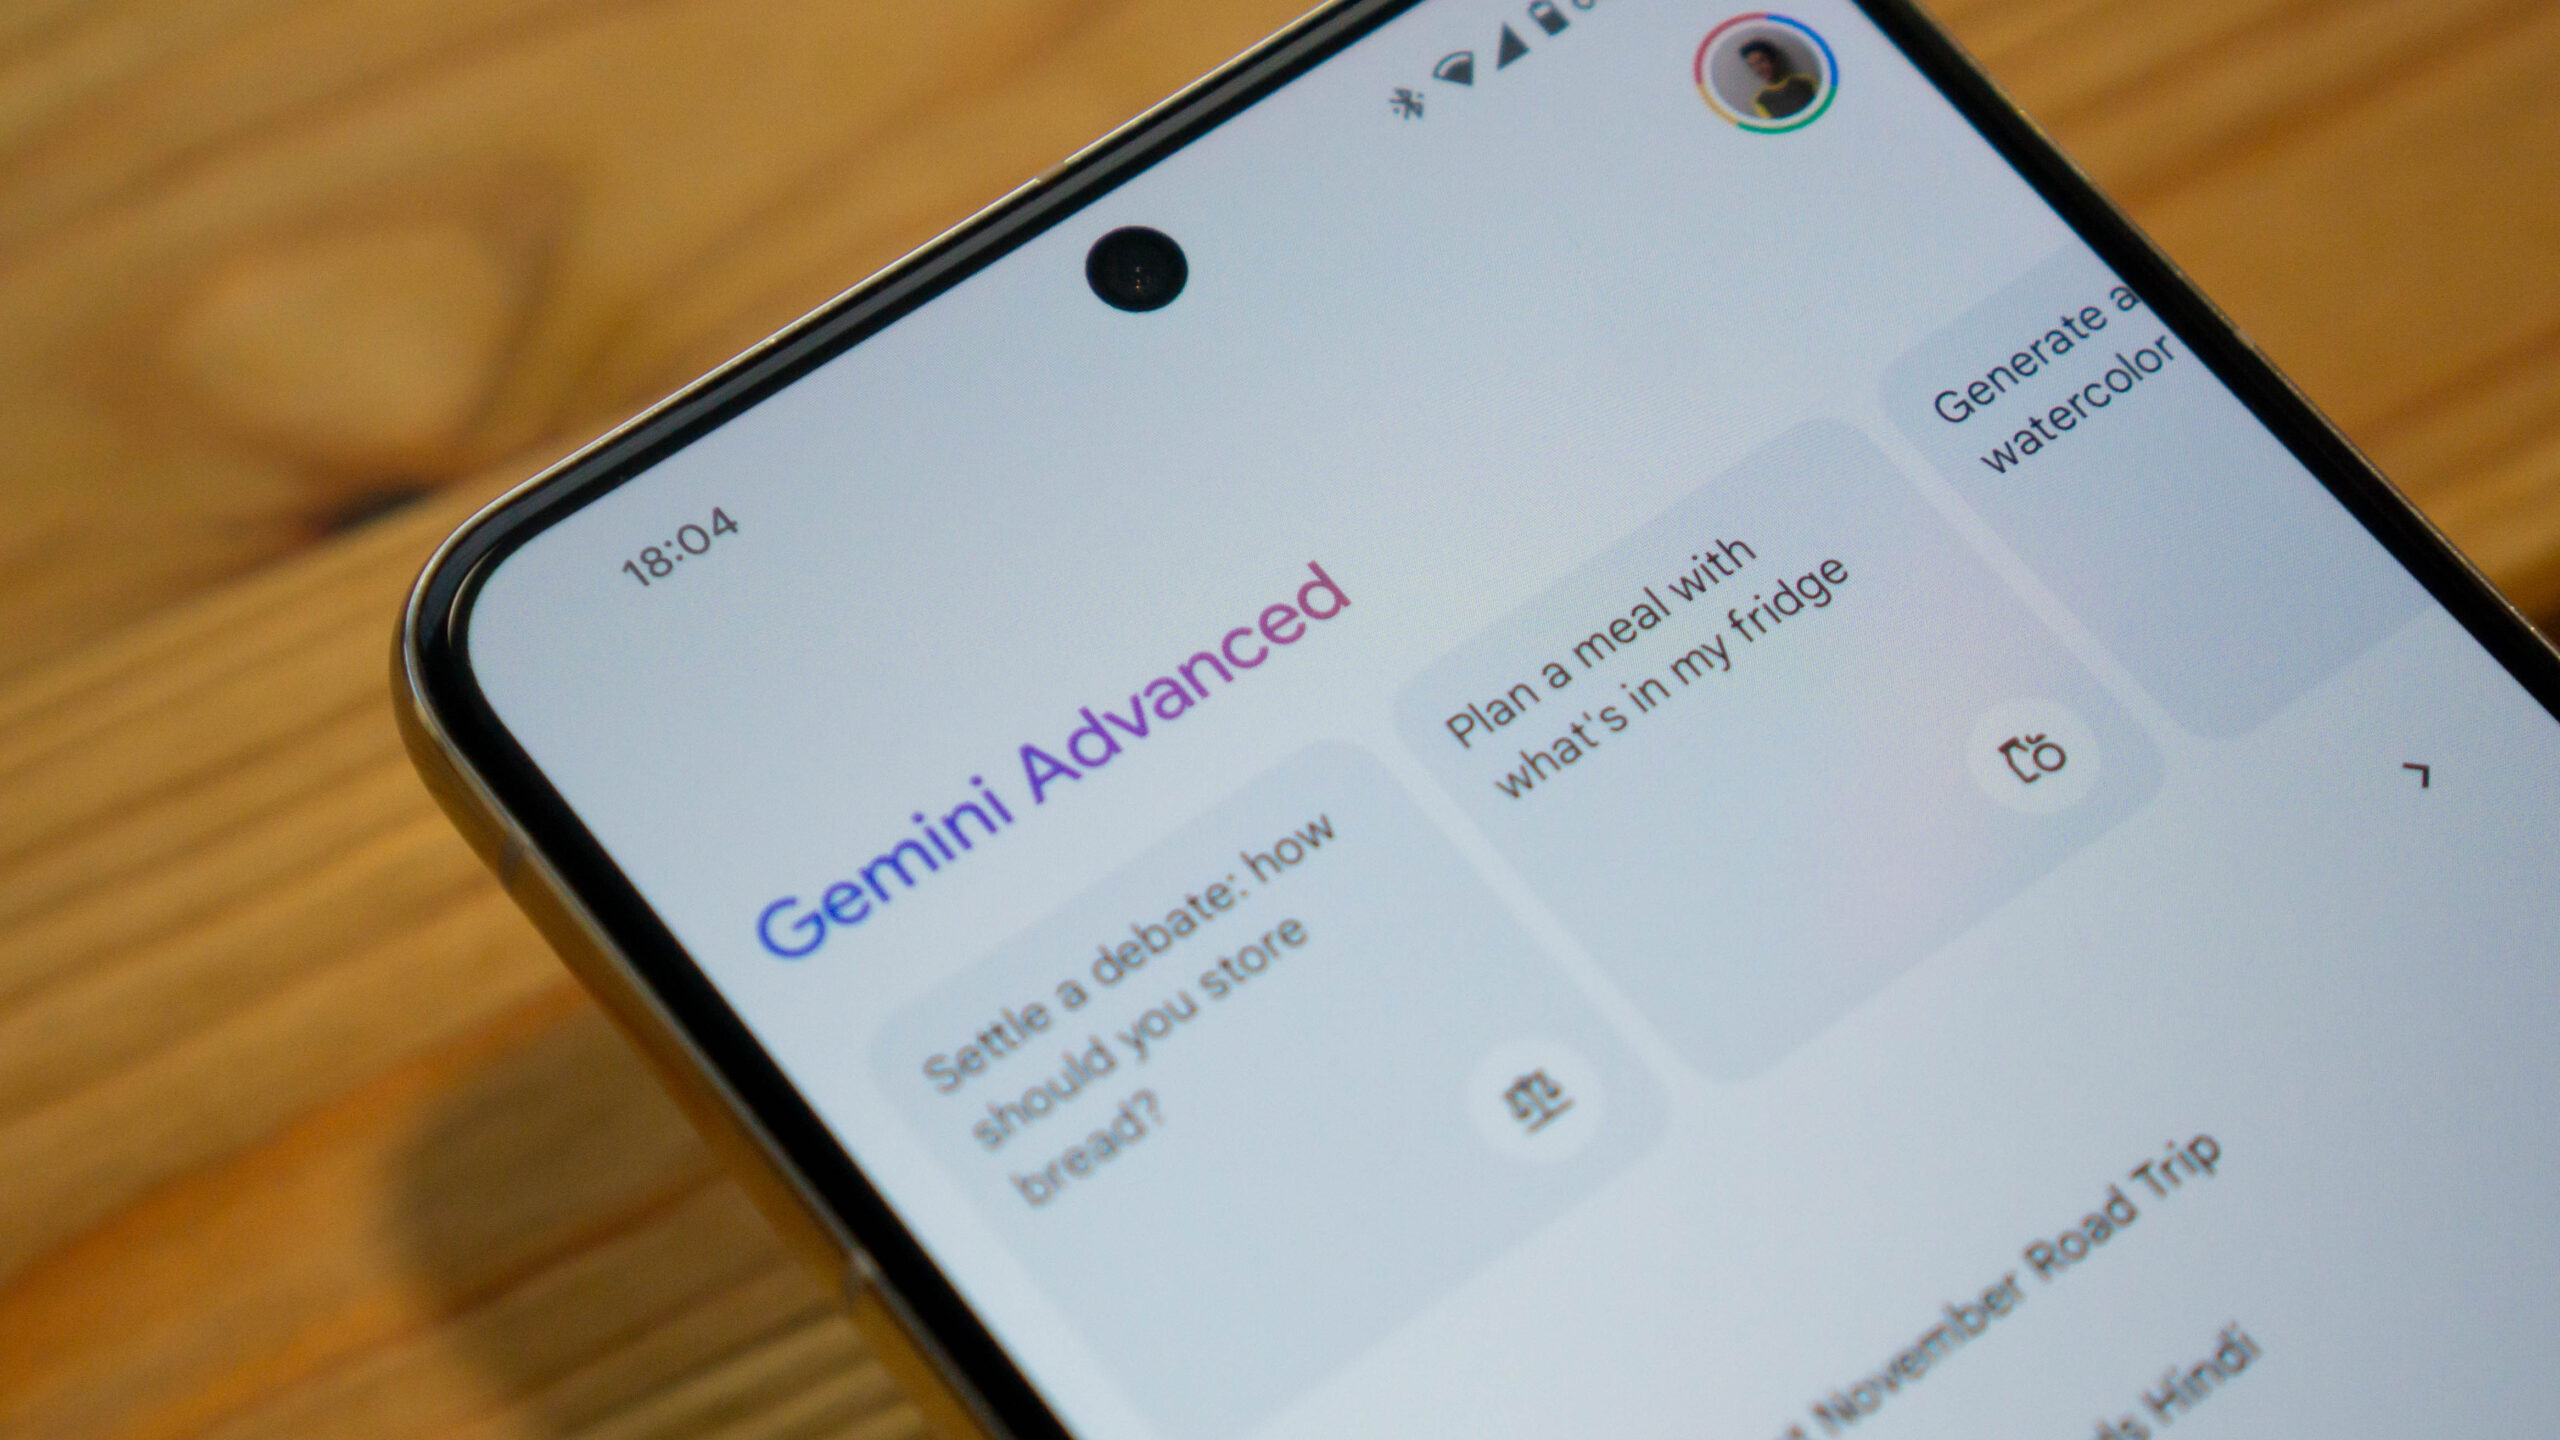 gemini advanced text in app